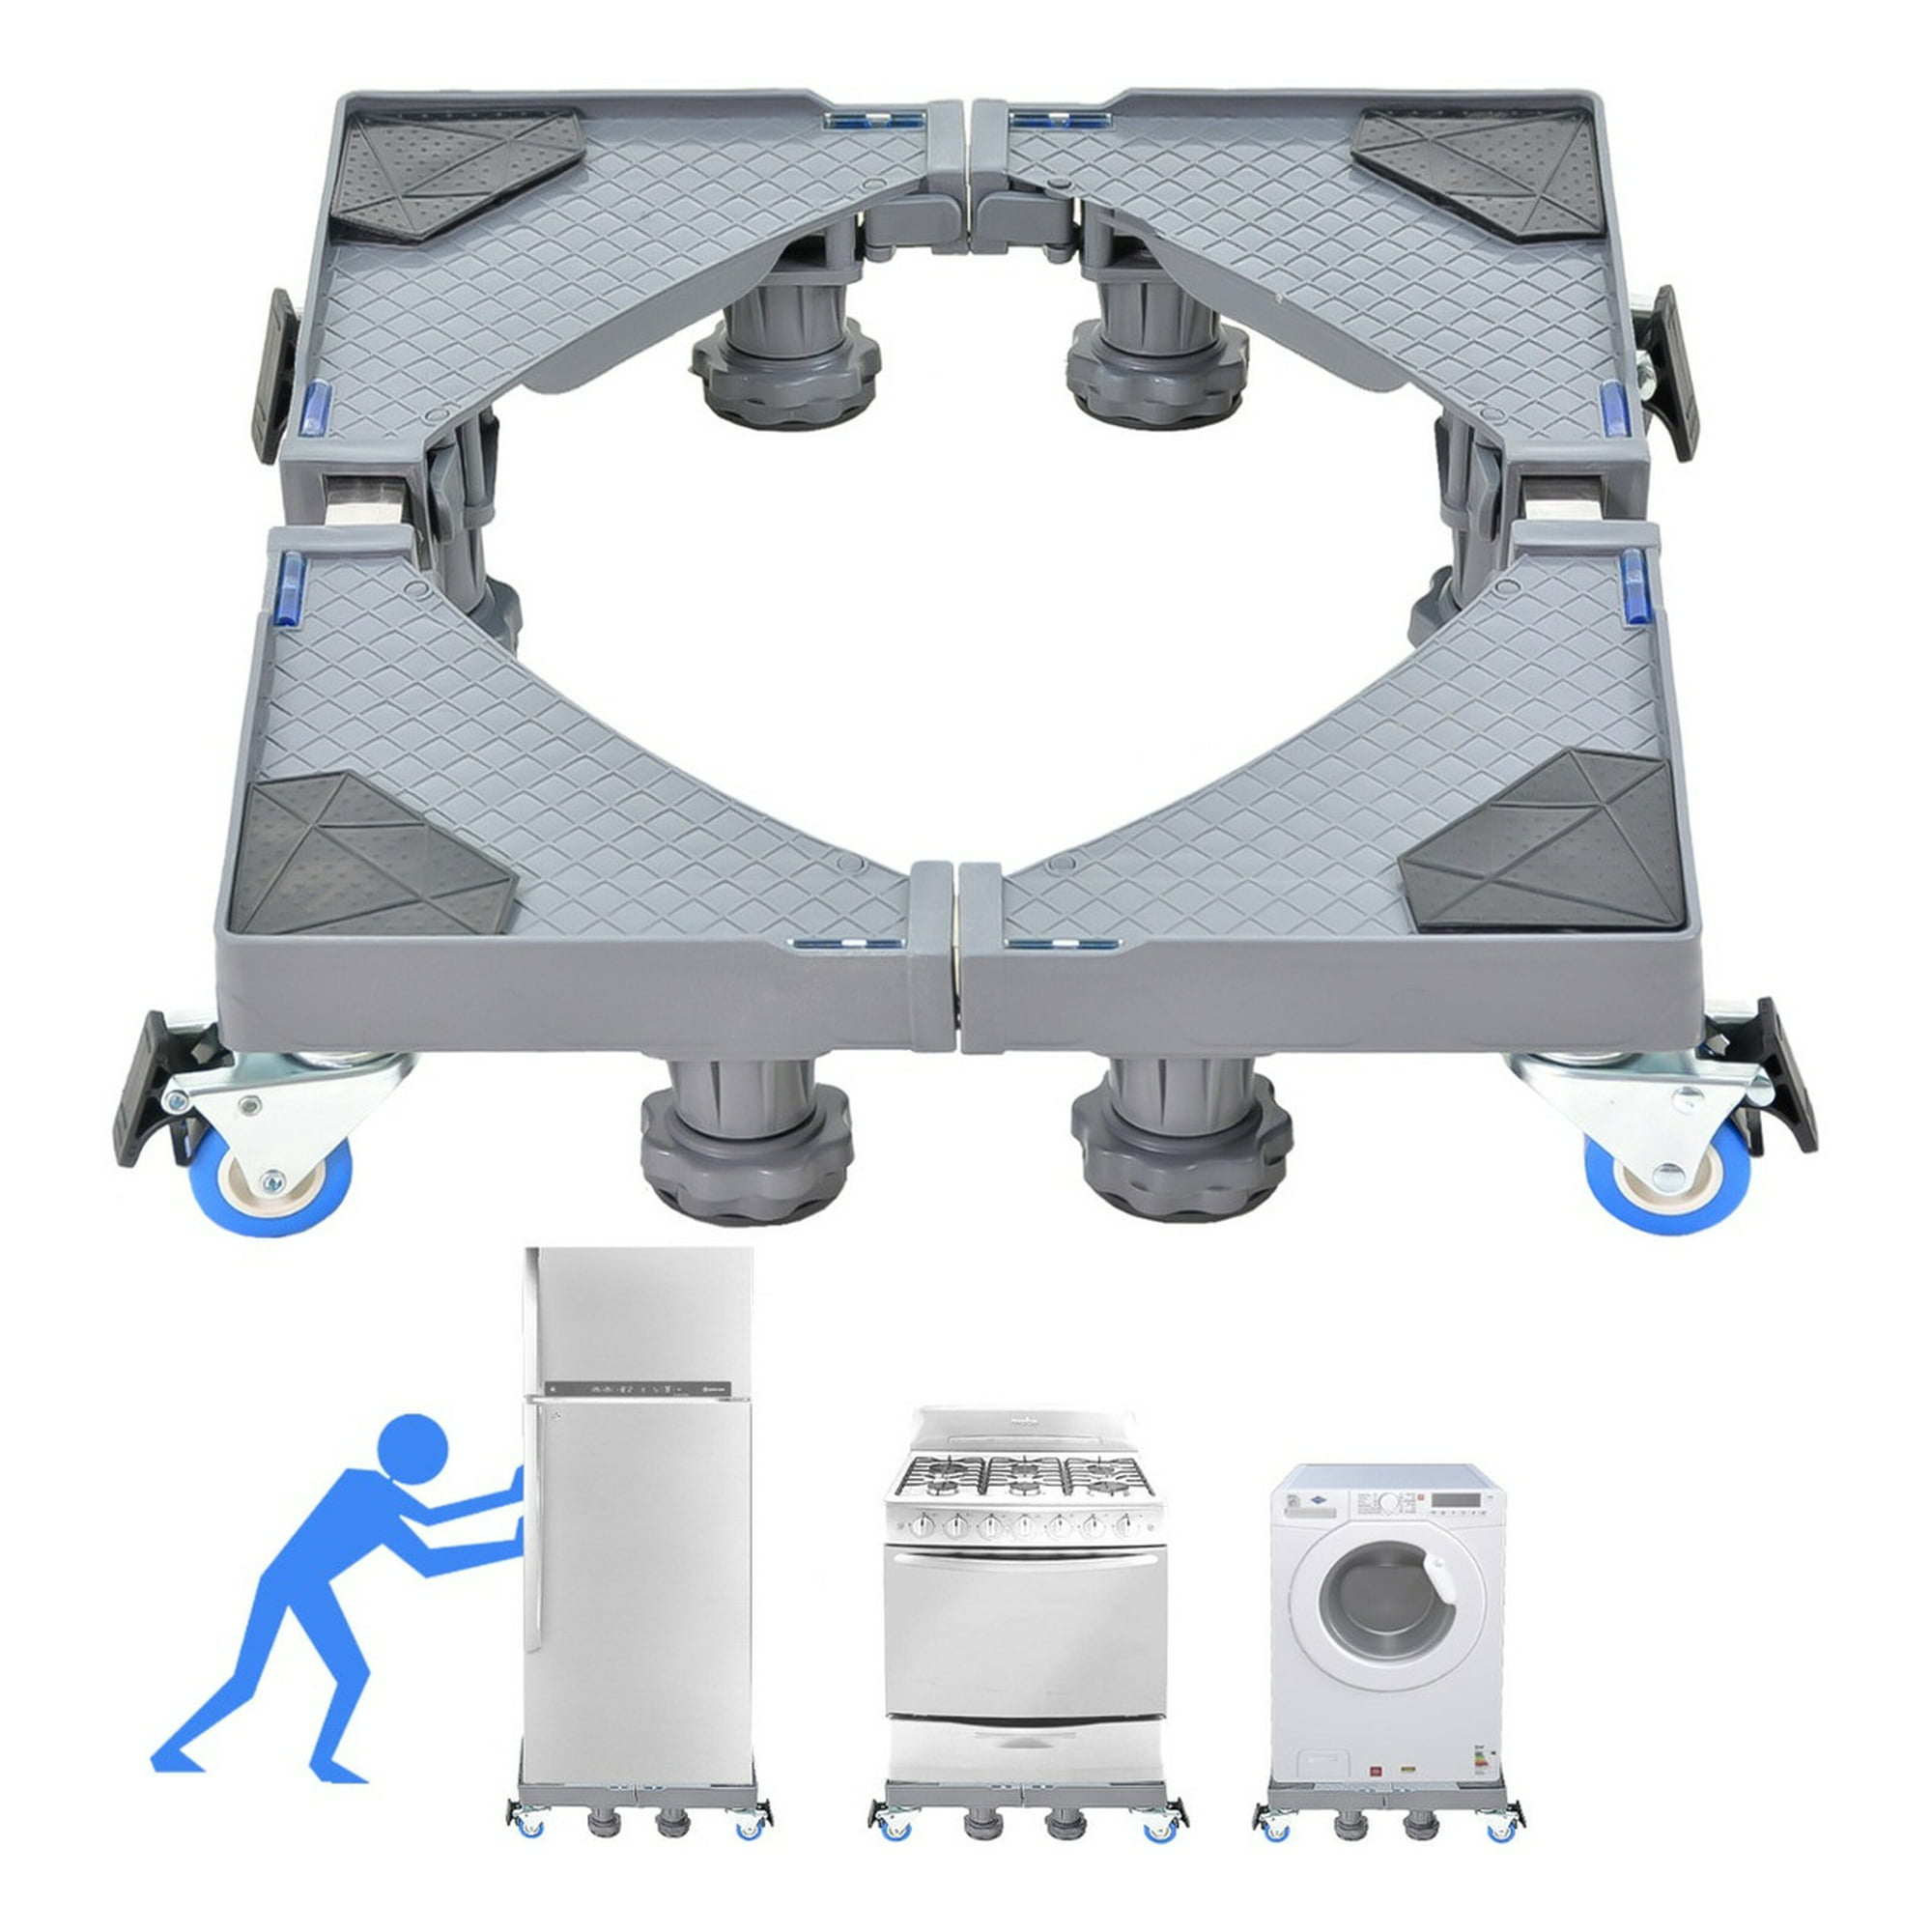 Soporte de base para lavadora y secadora, base deslizante para lavadora con  24 ruedas giratorias, mueble ajustable para refrigerador/secadora, con